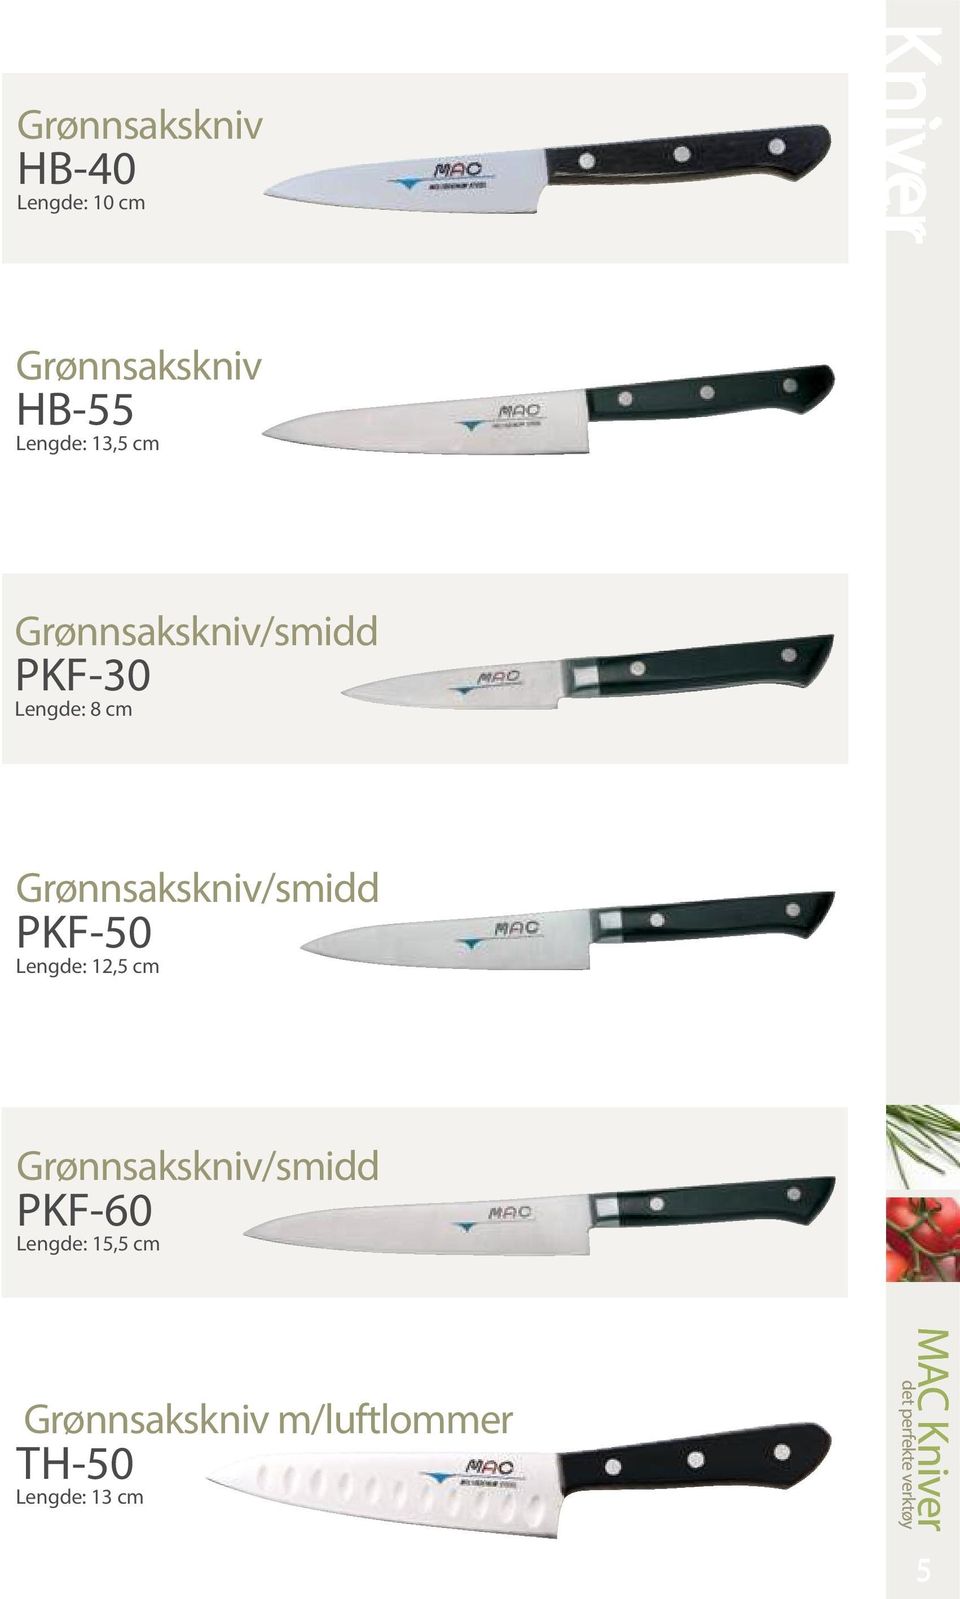 Grønnsakskniv/smidd PKF-50 Lengde: 12,5 cm Grønnsakskniv/smidd